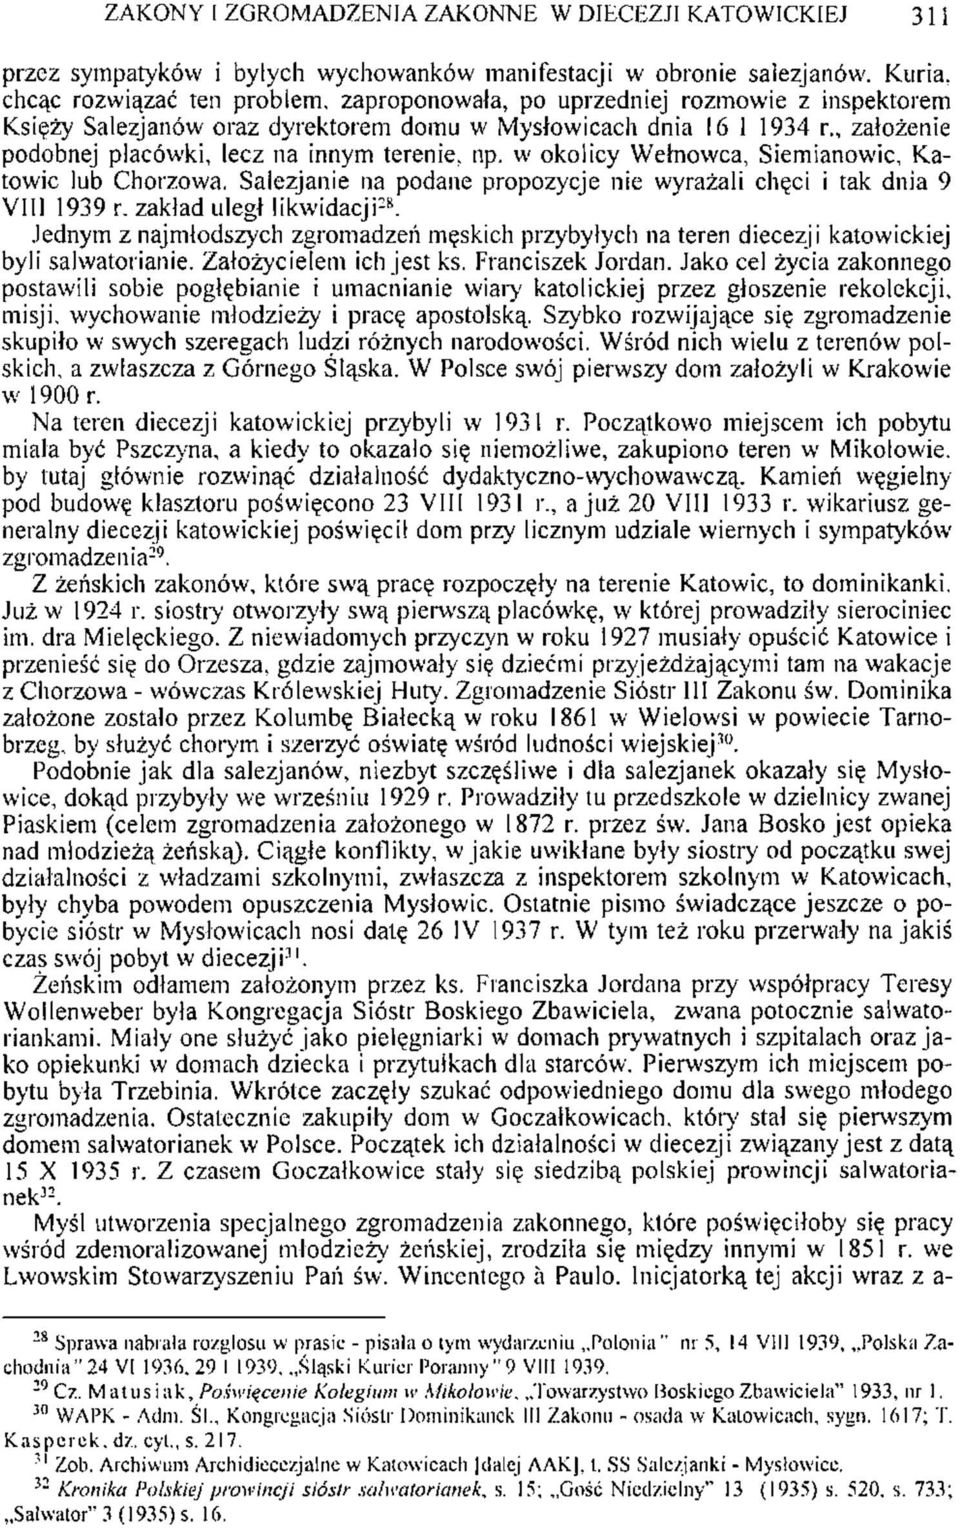 , założenie podobnej placówki, lecz na innym terenie, np. w okolicy Wełnowca, Siemianowic, Katowic lub Chorzowa. Salezjanie na podane propozycje nie wyrażali chęci i tak dnia 9 VIII 1939 r.